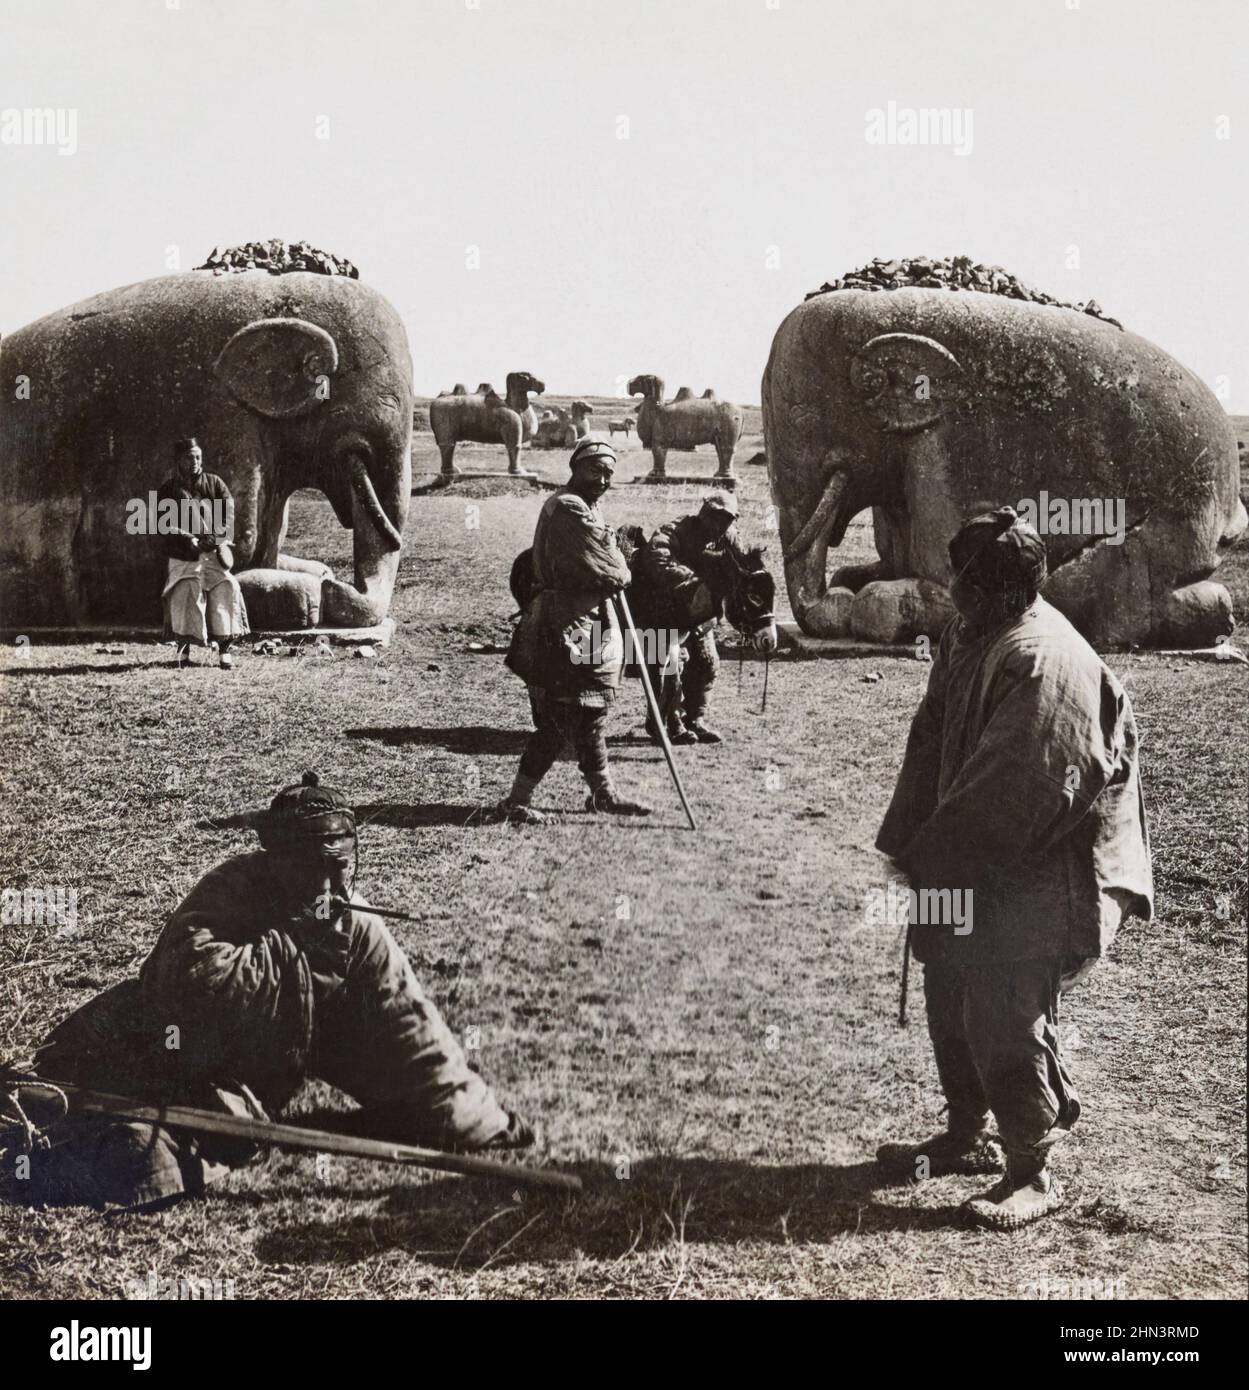 Vintage-Foto von chinesischen Bauern in der Nähe der riesigen Steinfigur der schlafenden Elefanten. Ming-Tumbs. Nanking, Nordchina. 1919 Stockfoto